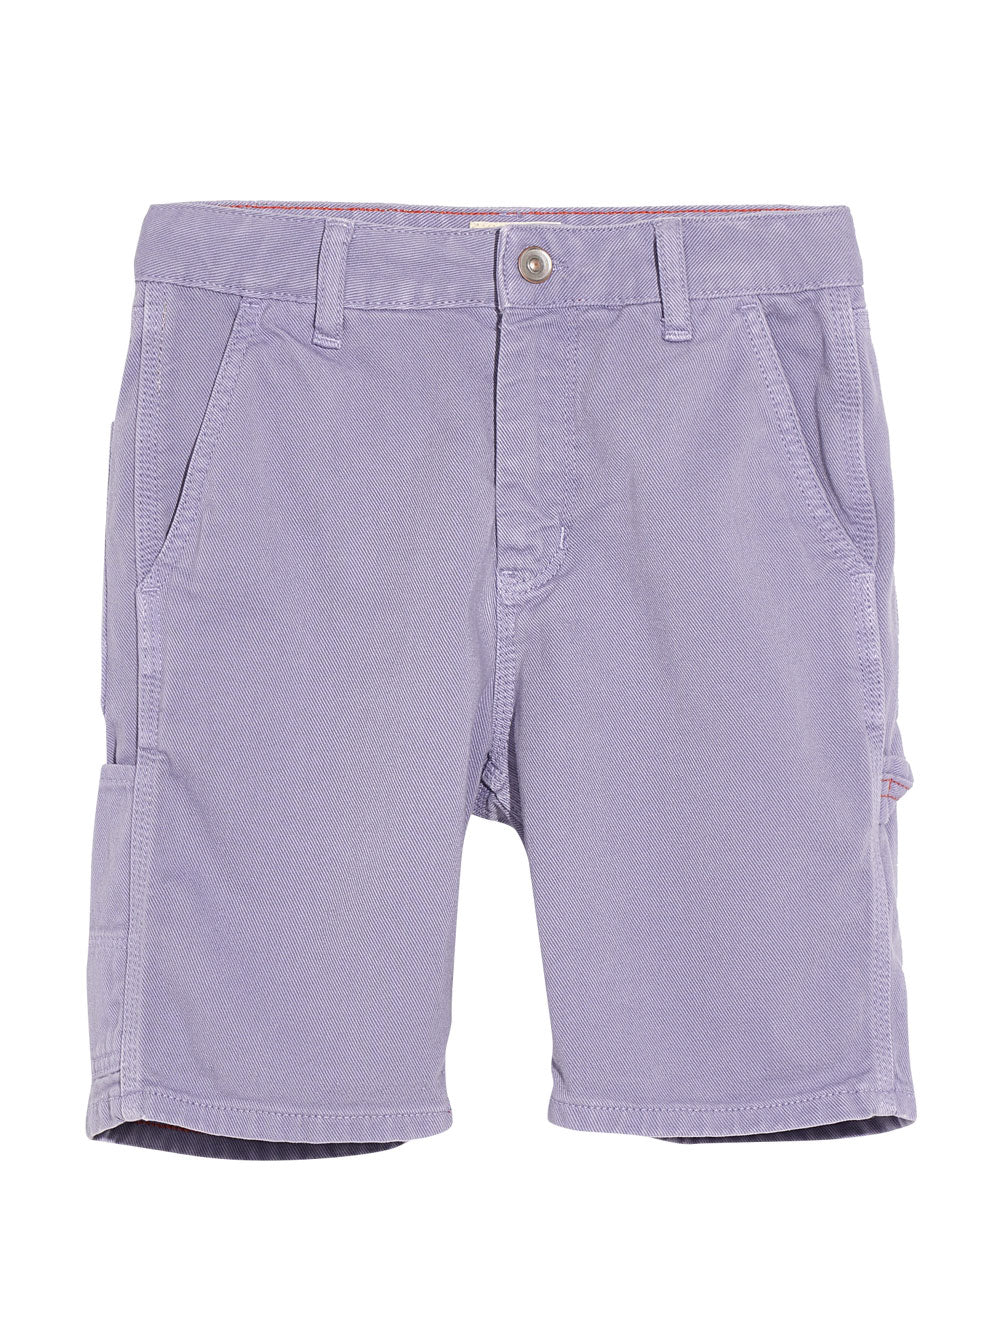 Lilac Printer Shorts